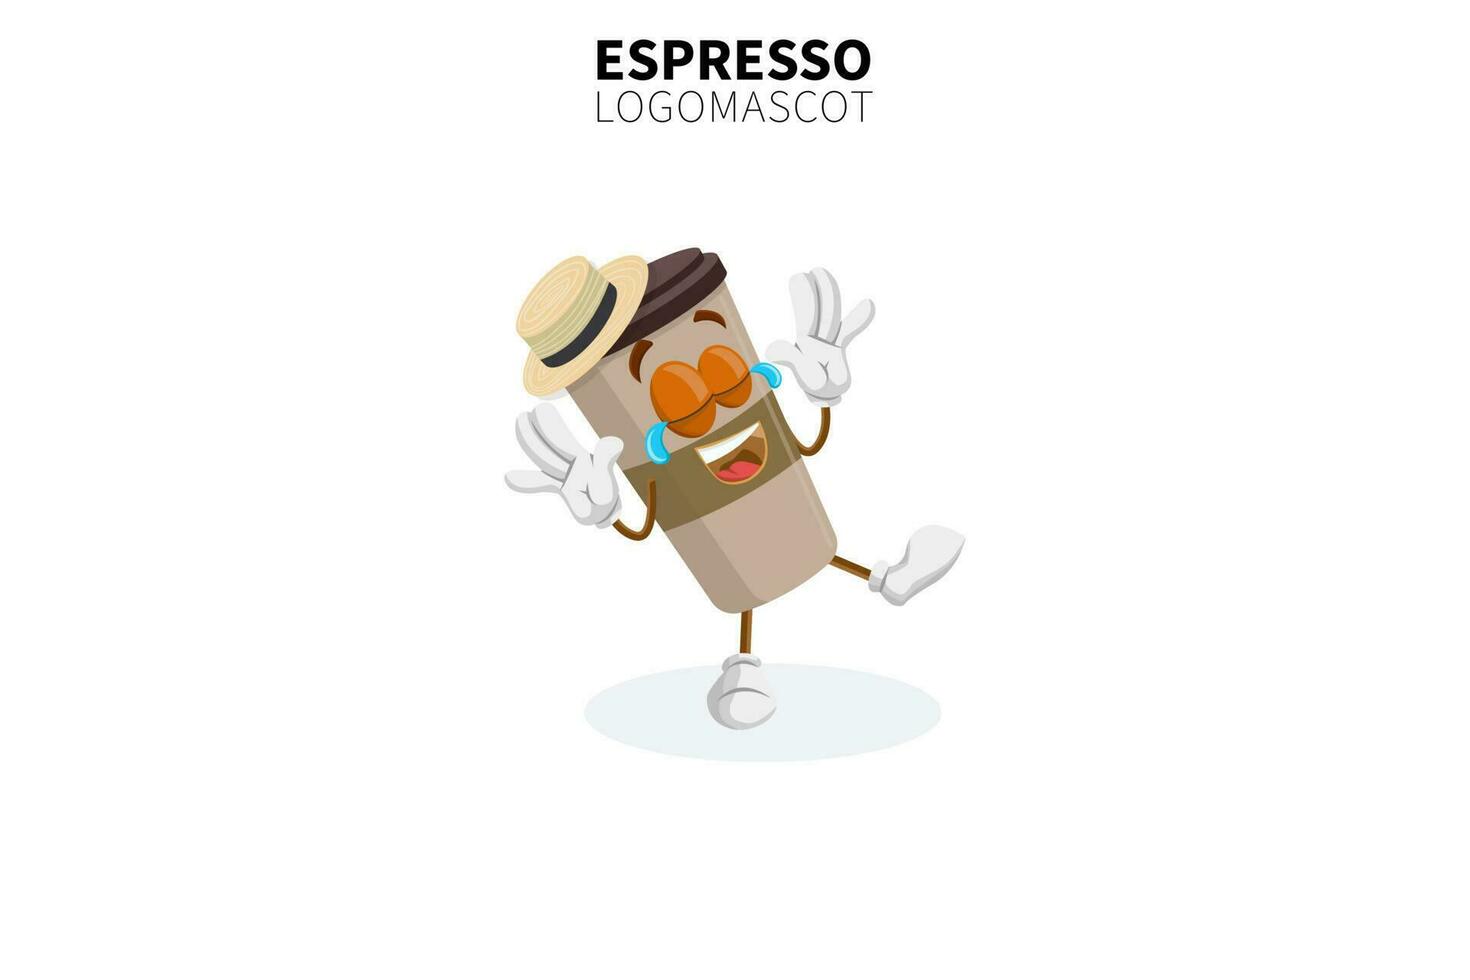 mascotte dell'espresso della tazza del fumetto, illustrazione vettoriale di una mascotte del personaggio dell'espresso della tazza marrone carino